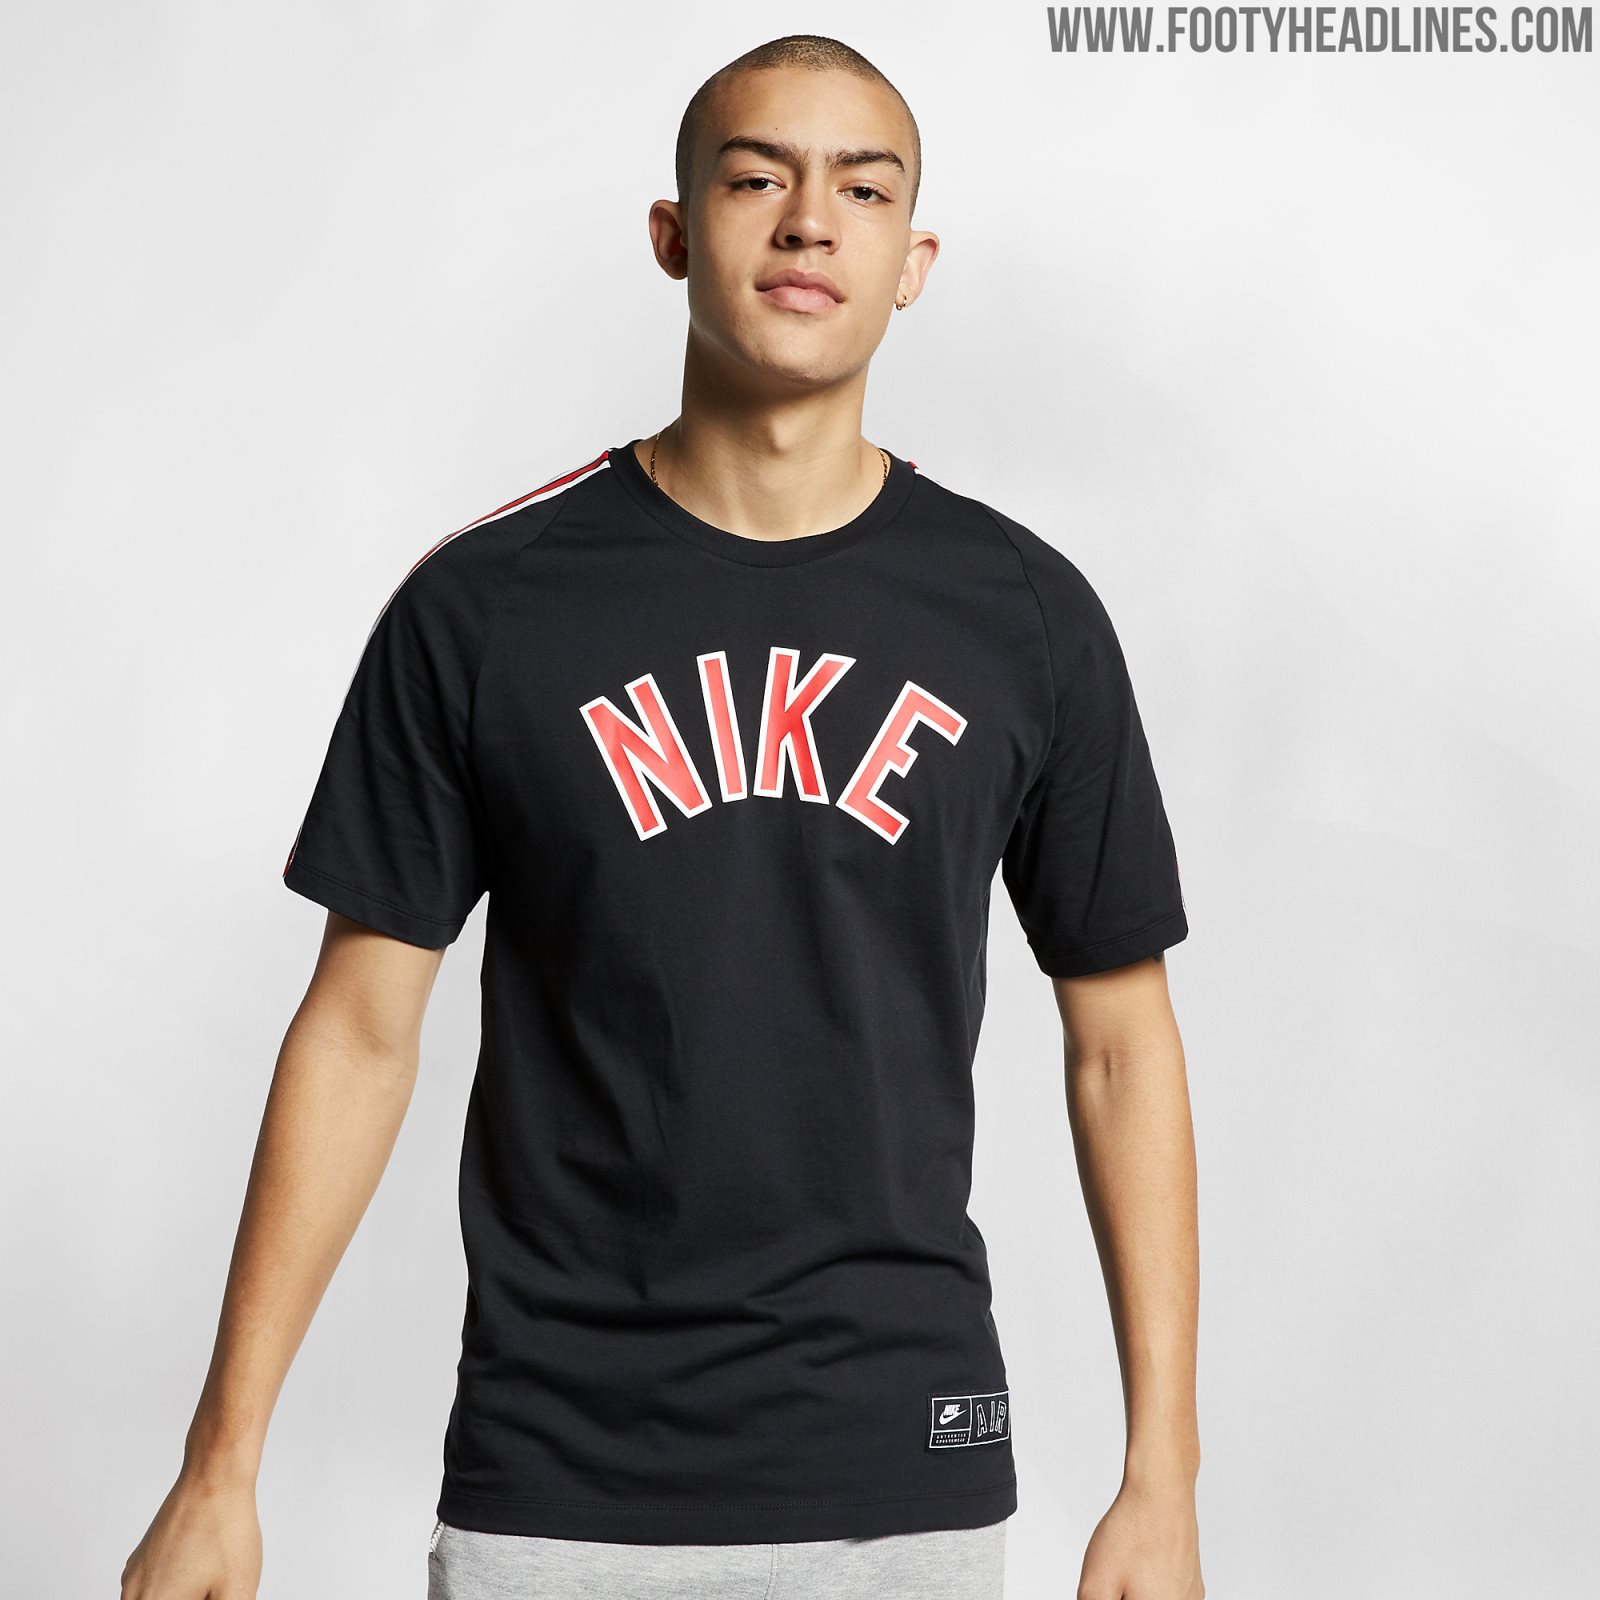 Verdorie Erfgenaam Geval Is This Allowed? Ronaldo Wears Nike Shirt With Adidas 3 Stripes - Footy  Headlines